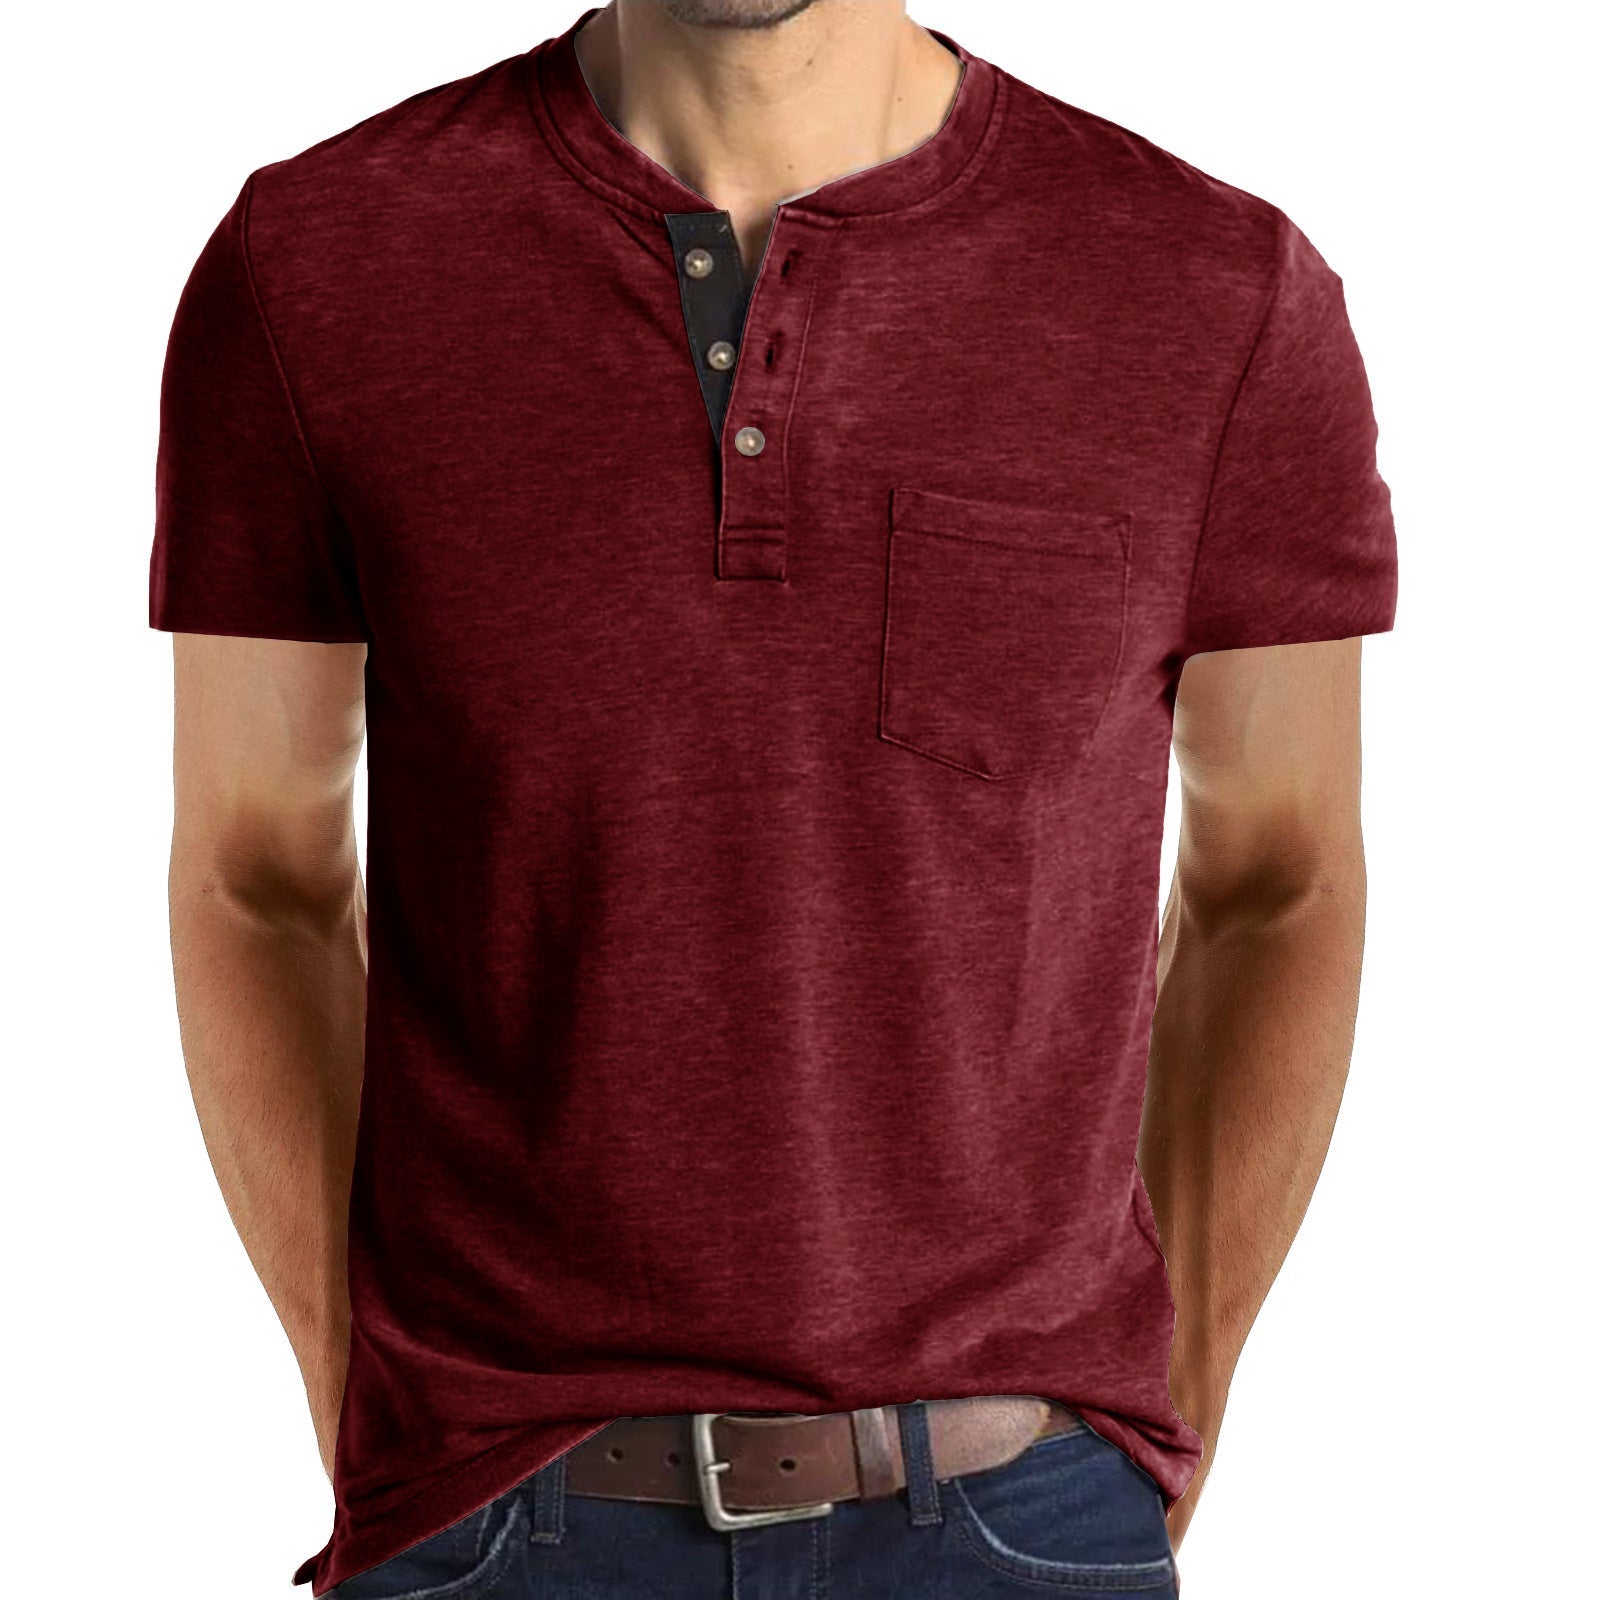 Casual Summer Short Sleeves Men T Shirts-Shirts-Free Shipping at meselling99